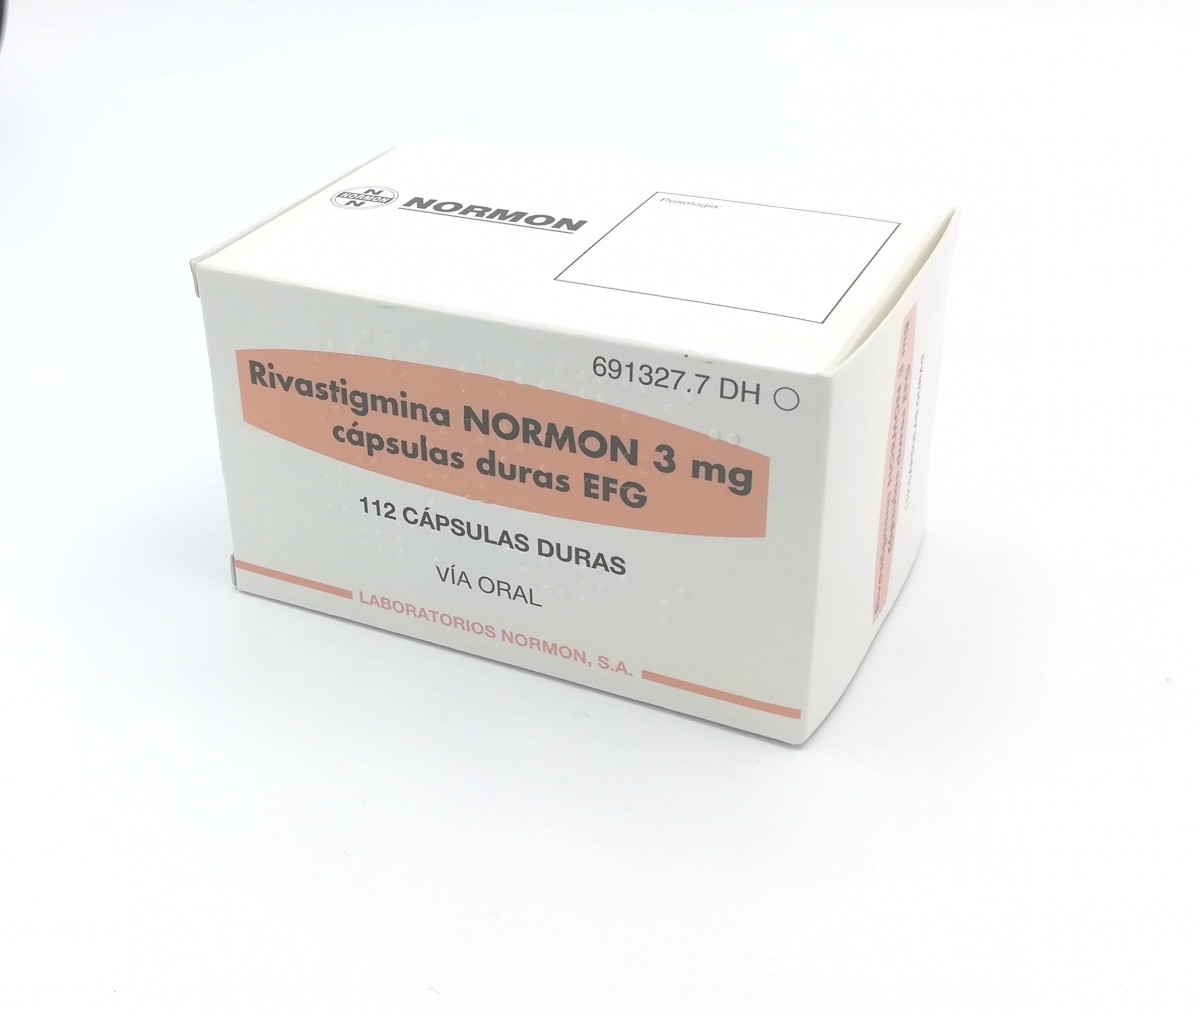 RIVASTIGMINA NORMON 3 mg CAPSULAS DURAS EFG , 112 cápsulas (Al/PVC/PVDC) fotografía del envase.